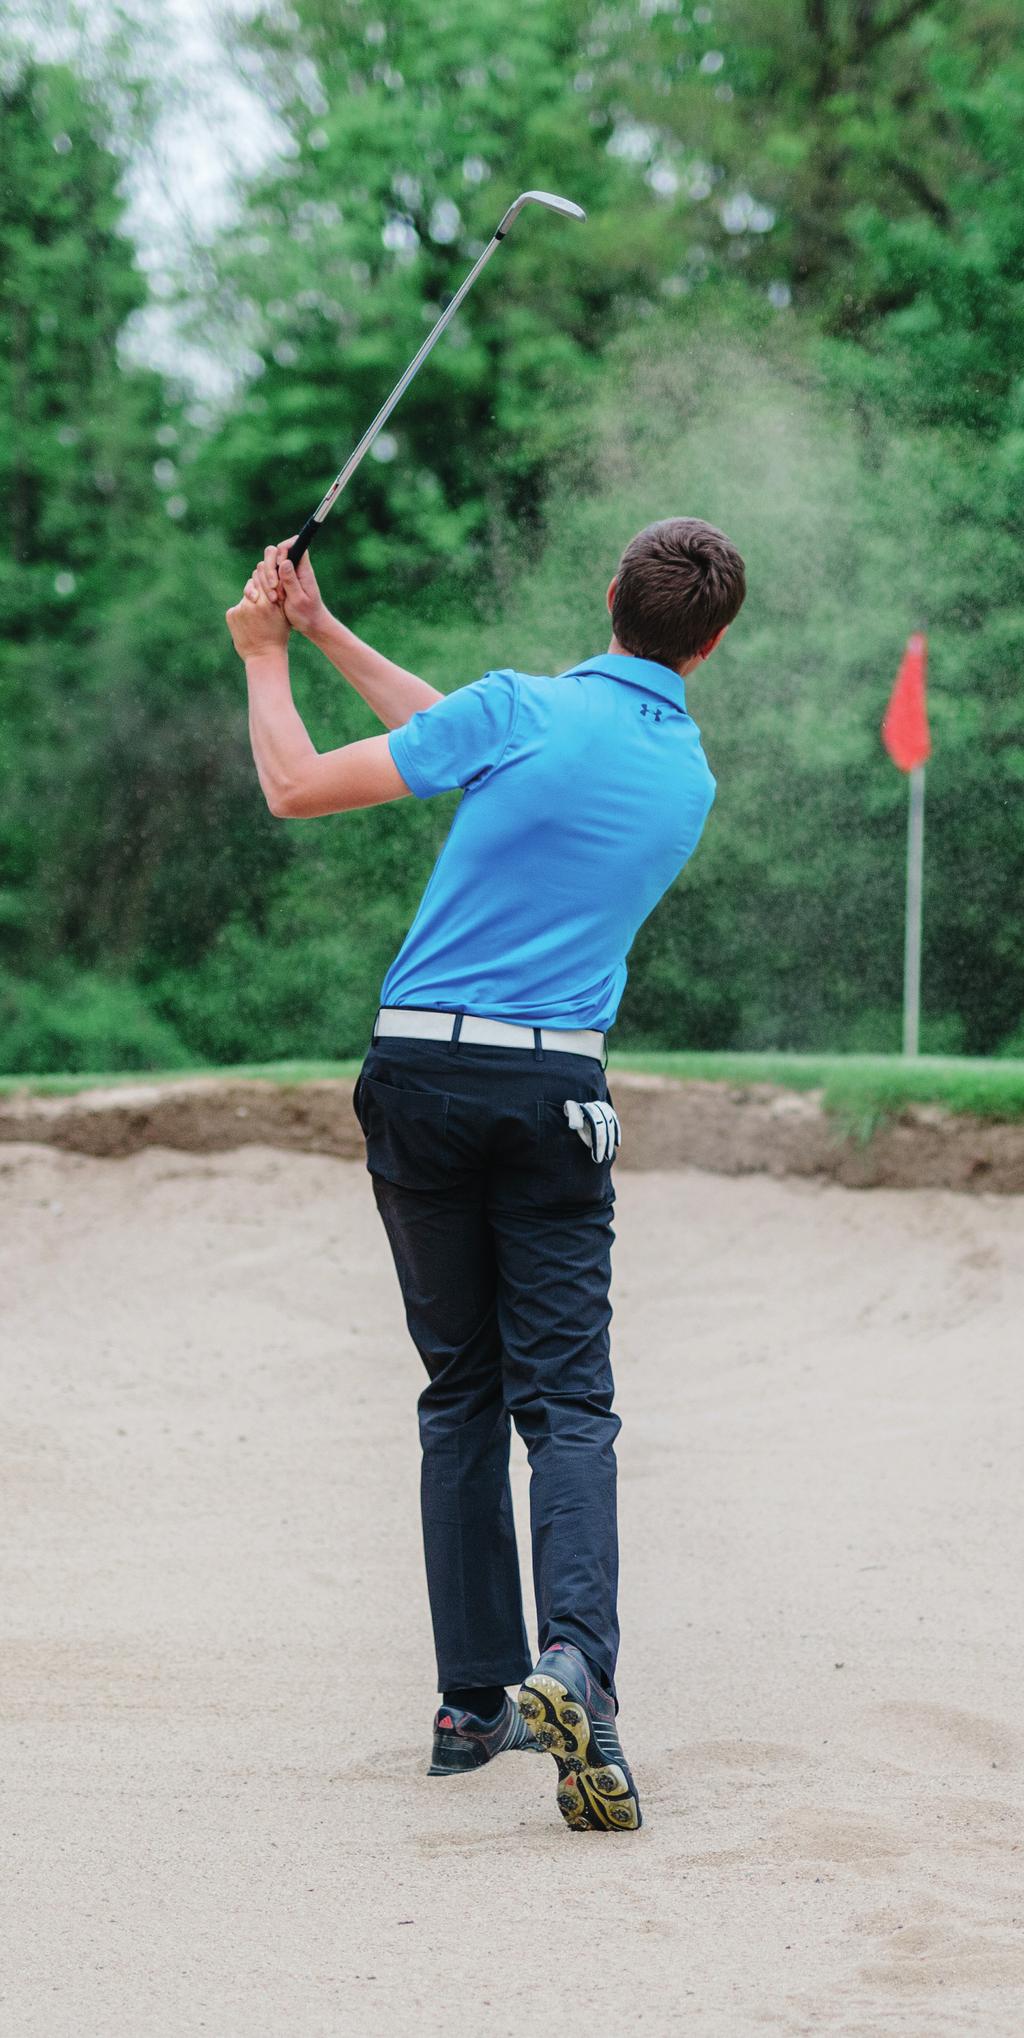 DGV (Deutscher Golf Verband) Platzreife: Der Führerschein zum Golfspielen.